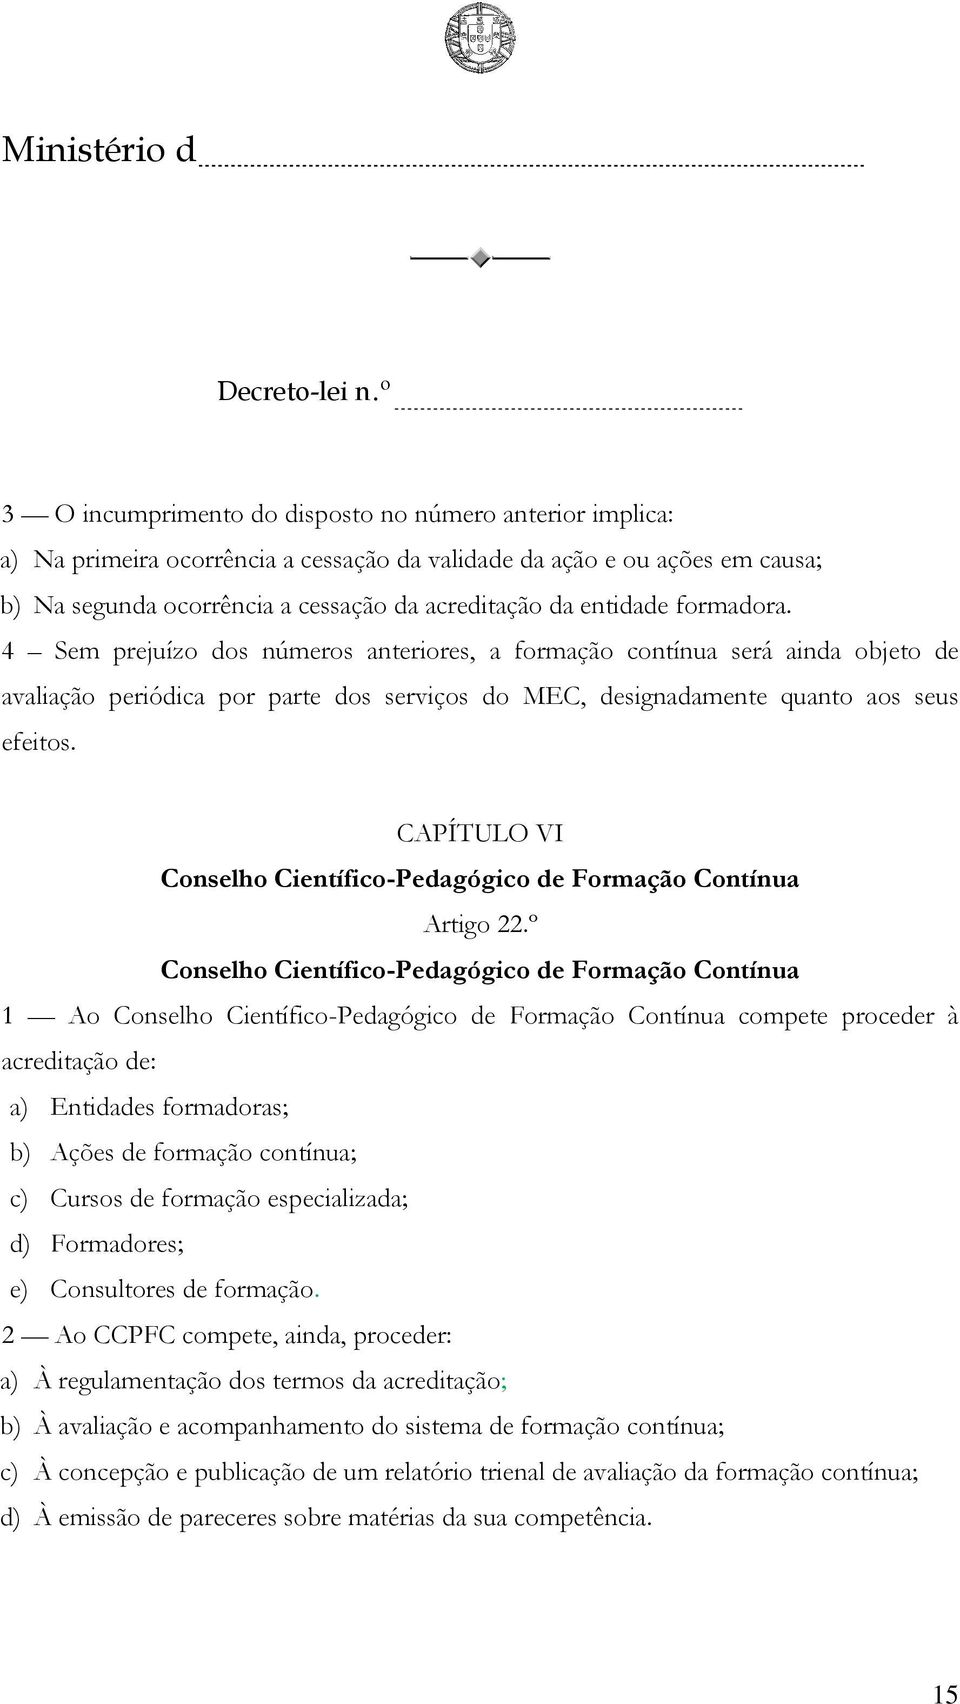 CAPÍTULO VI Conselho Científico-Pedagógico de Formação Contínua Artigo 22.